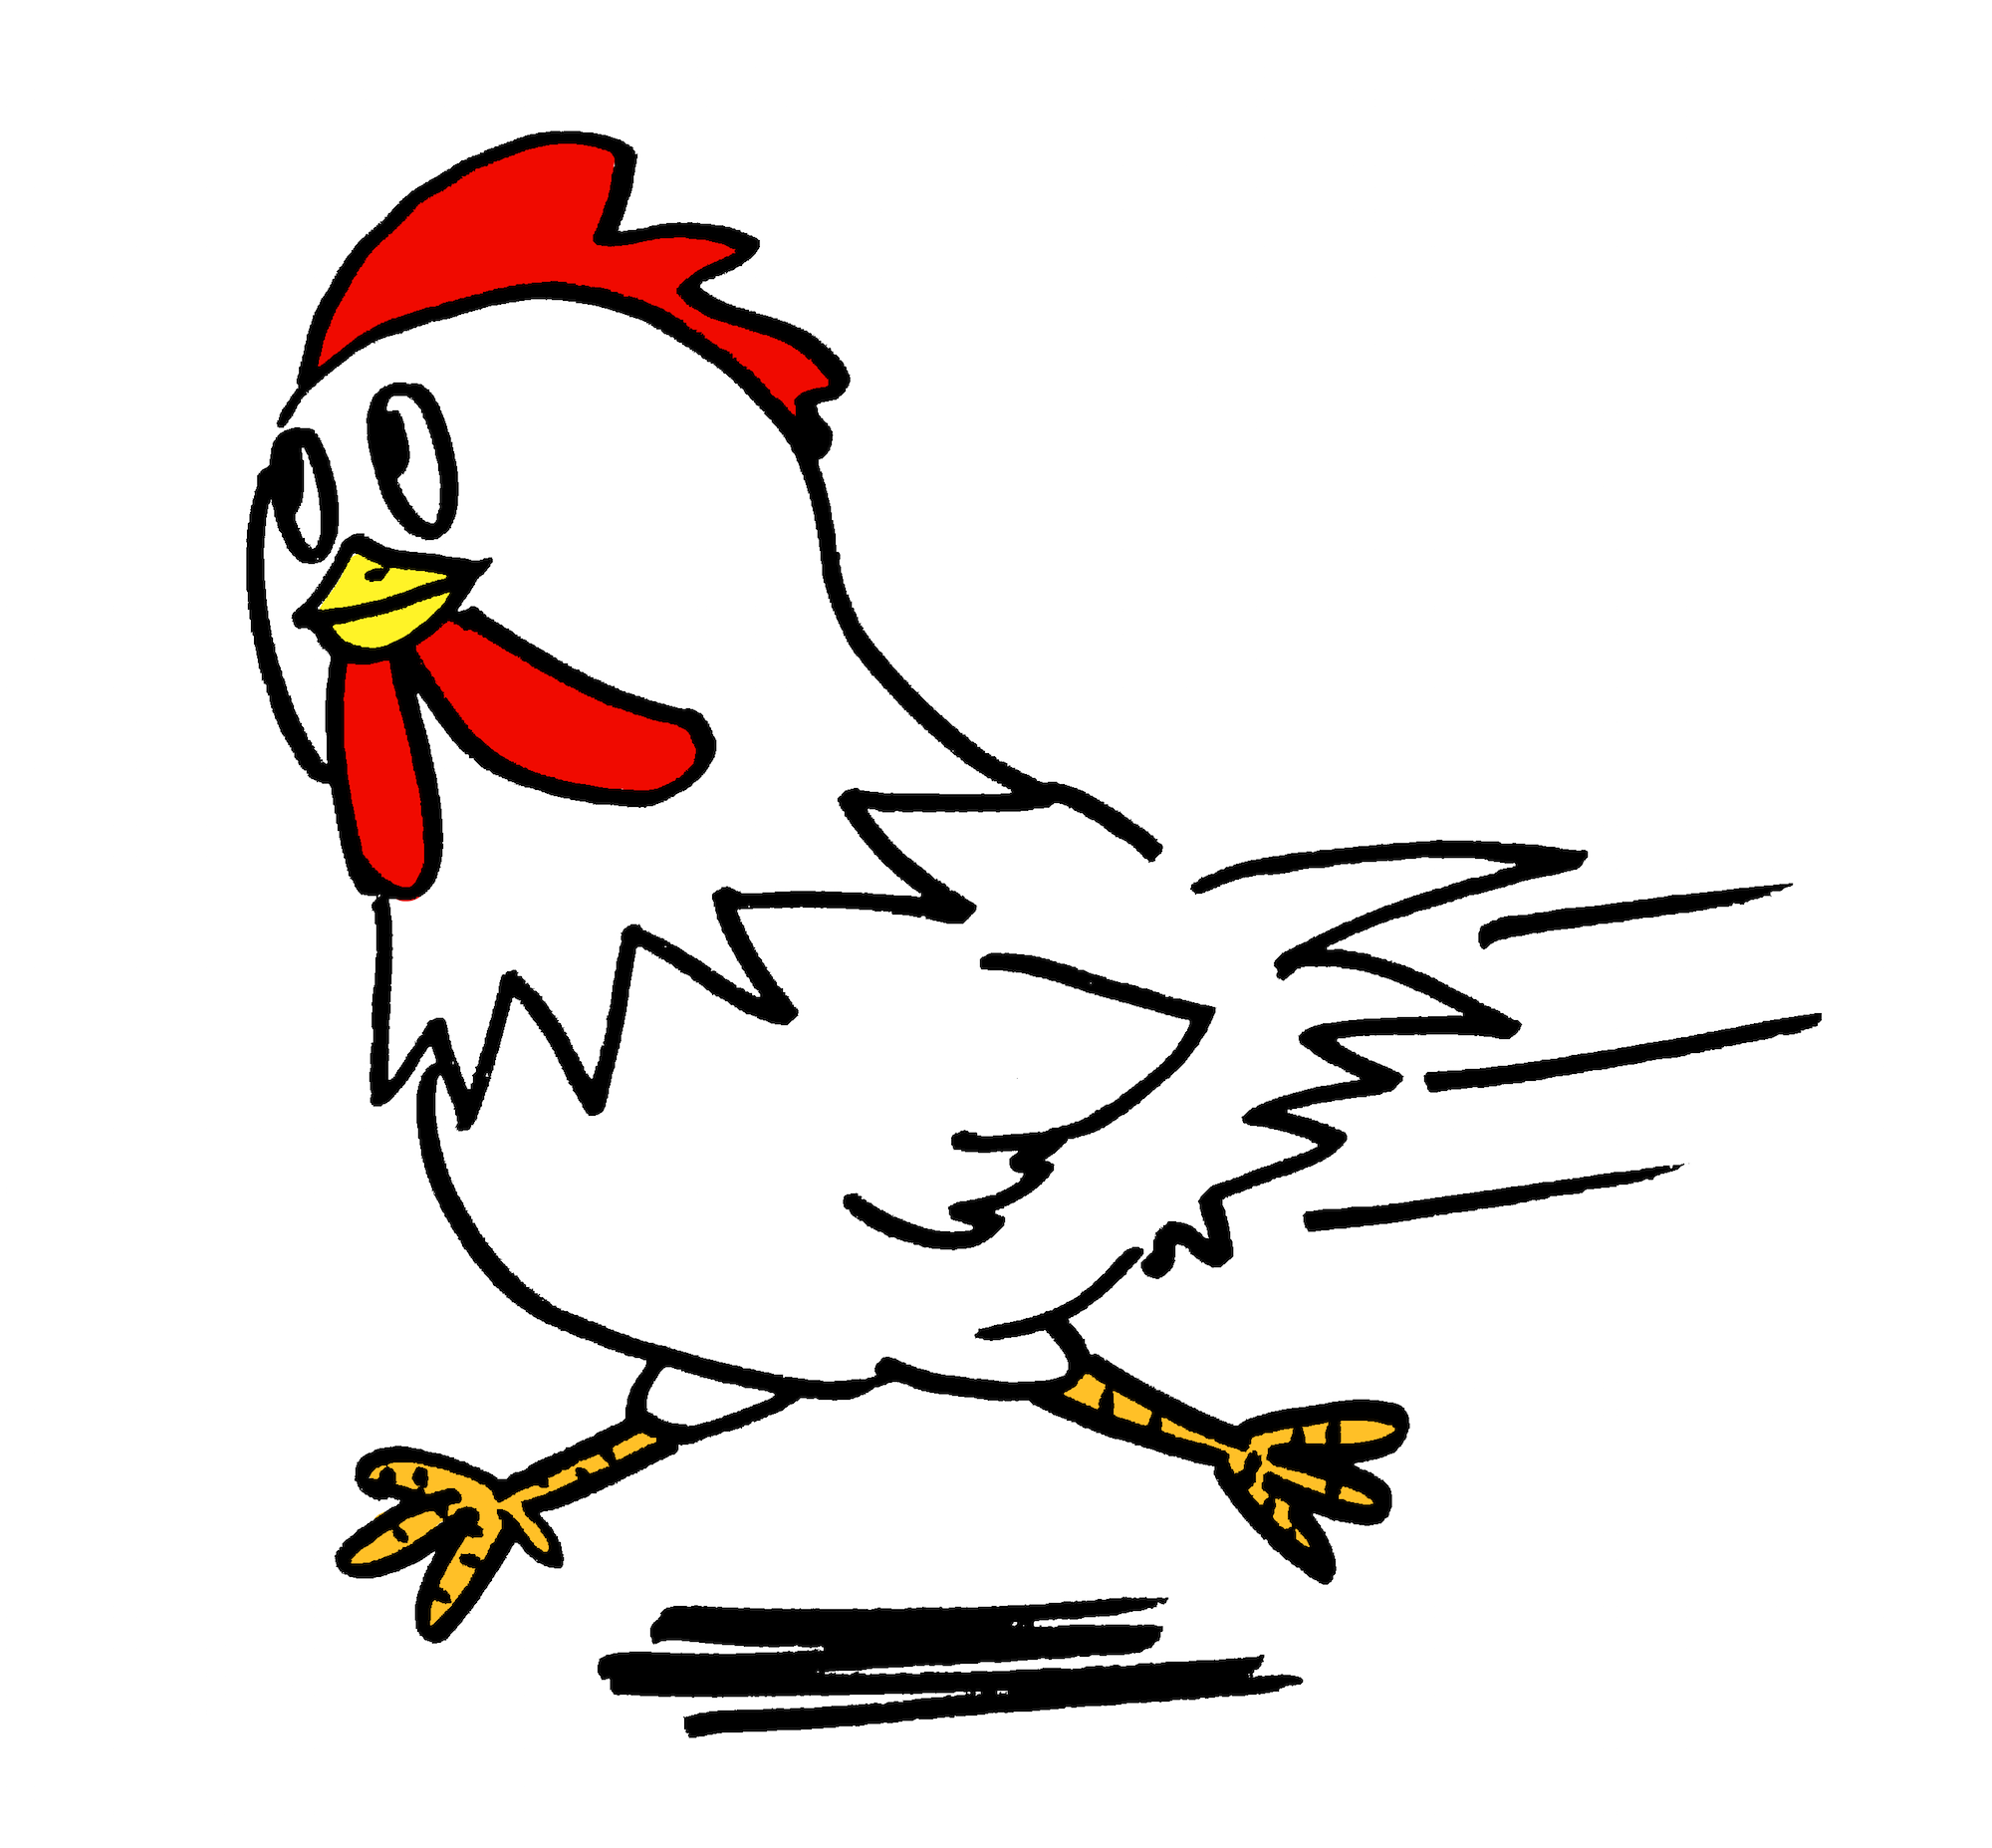 走る可愛いニワトリ鶏 無料年賀状素材干支酉年 無料イラスト配布サイトマンガトップ